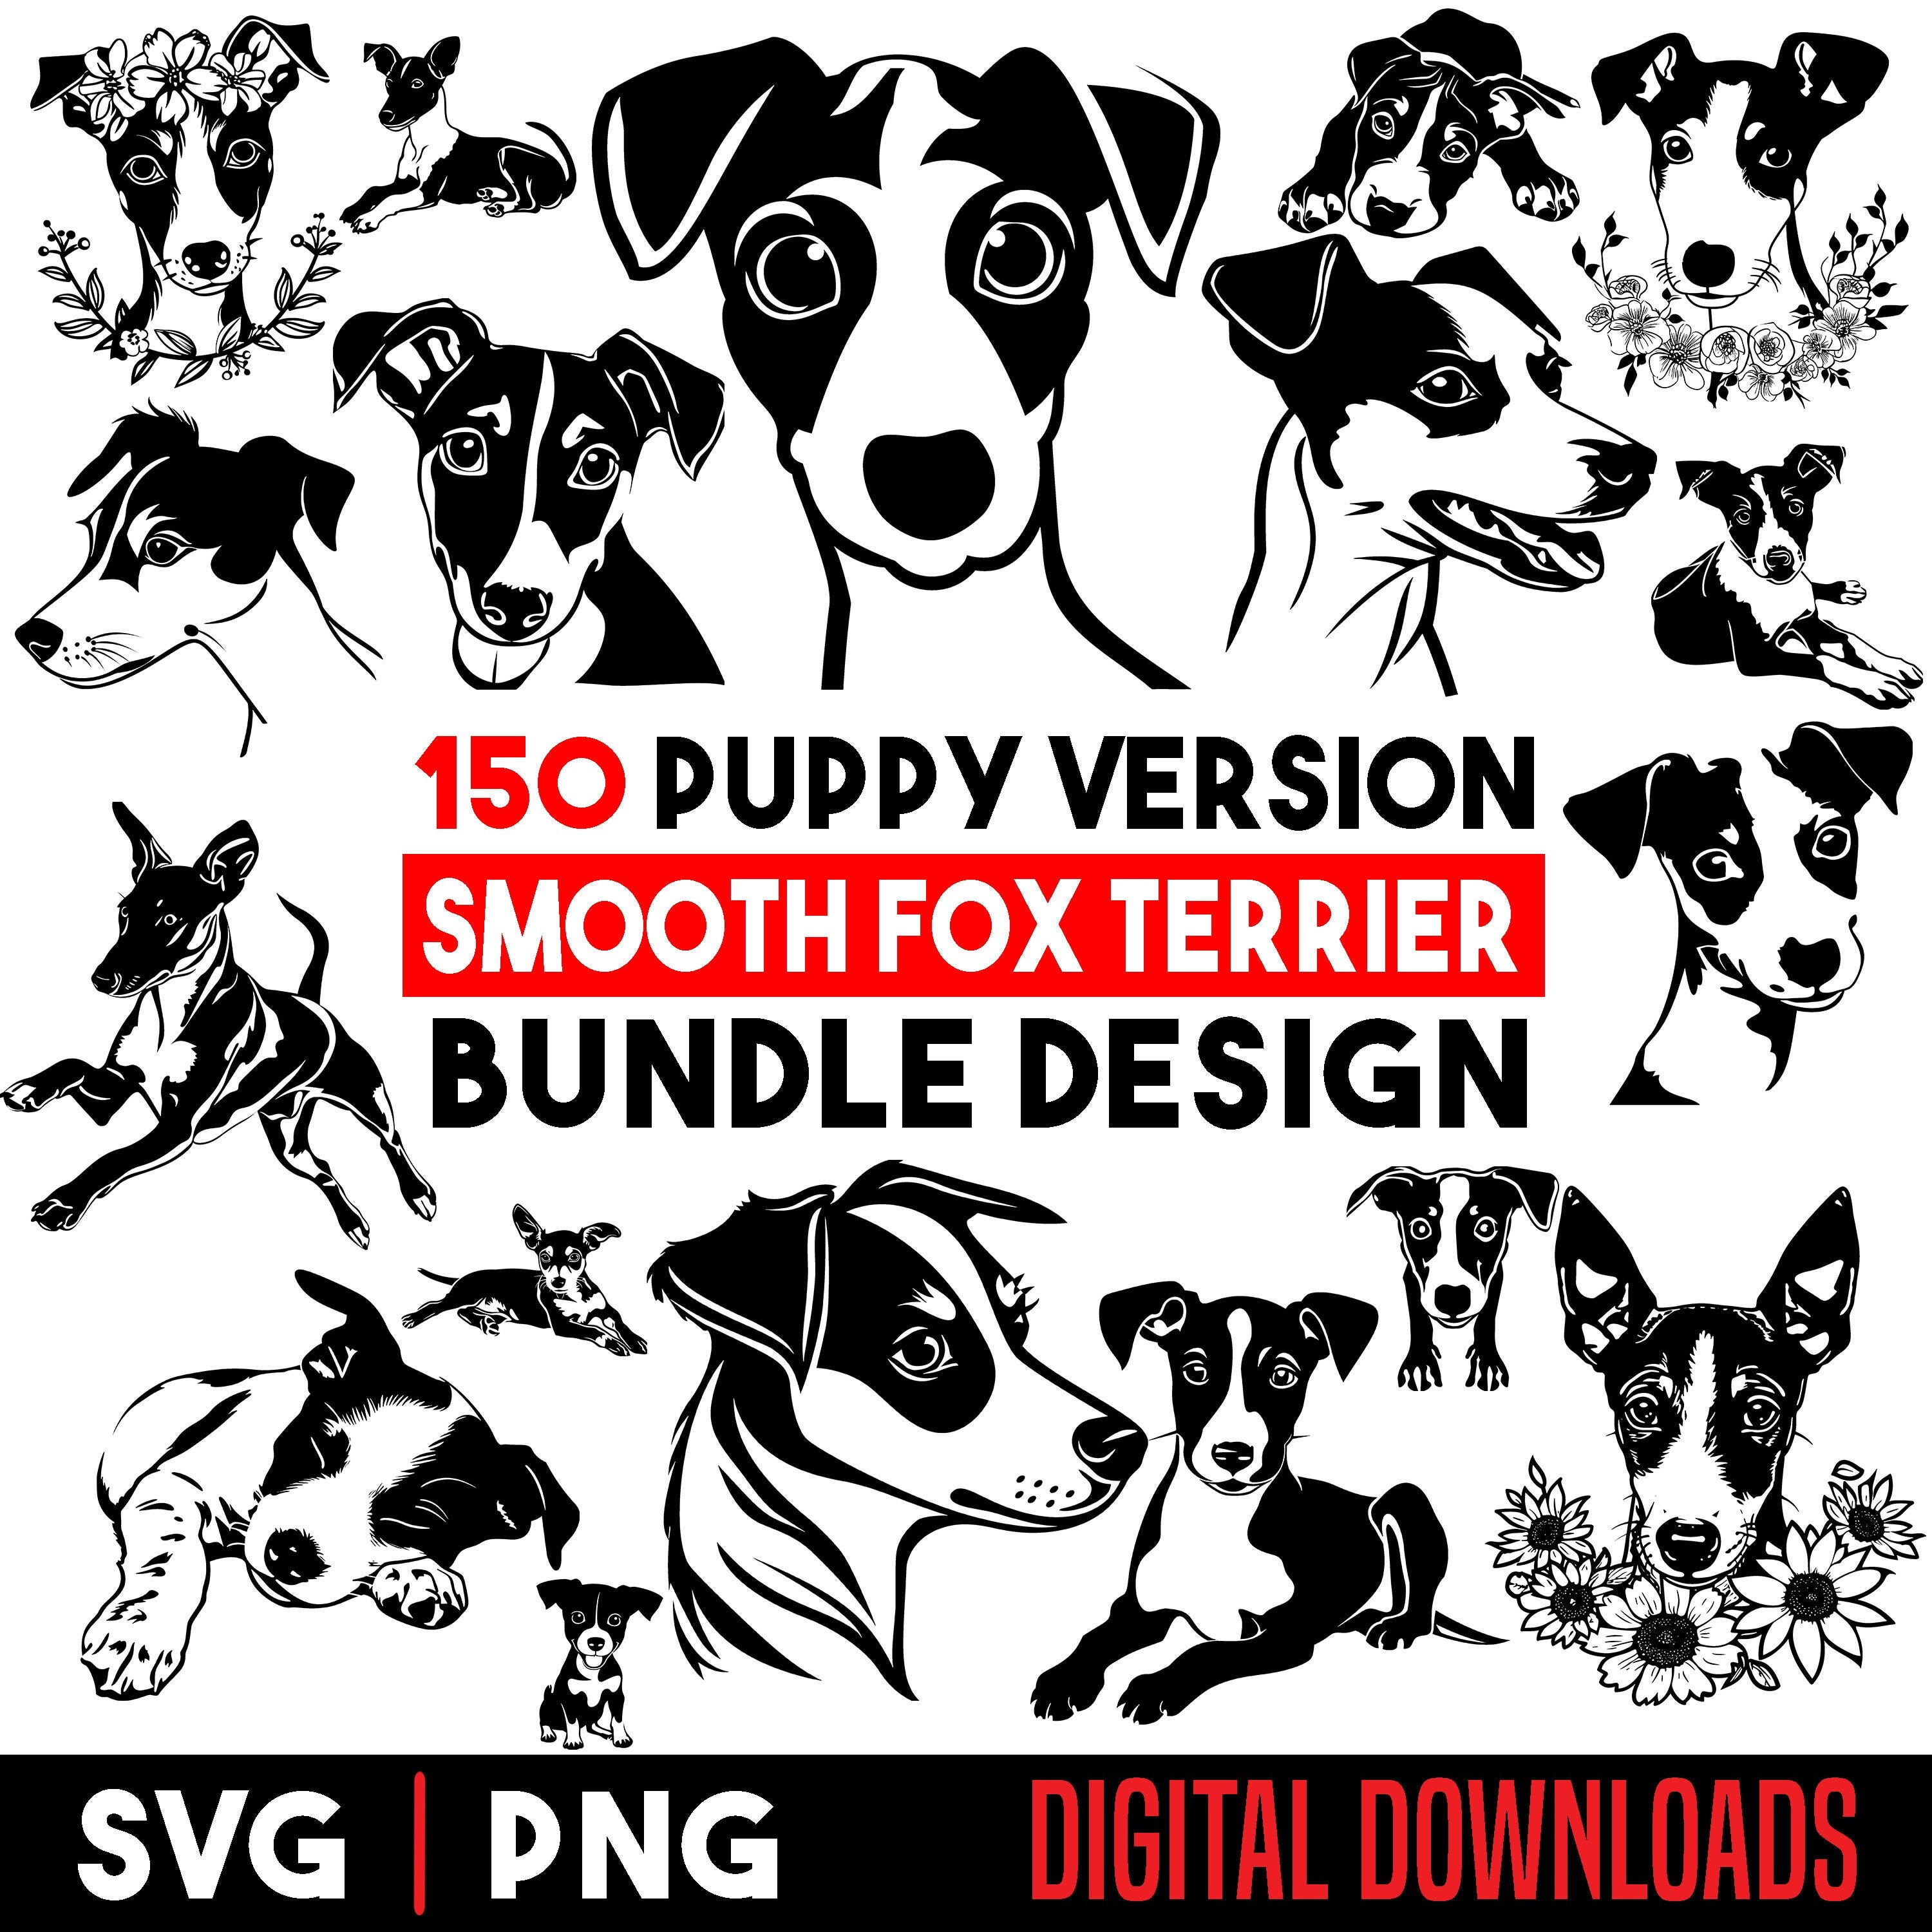 Smooth Fox Terrier Puppy dog pet lover owner Bundle SVG, PNG instant digital downloads